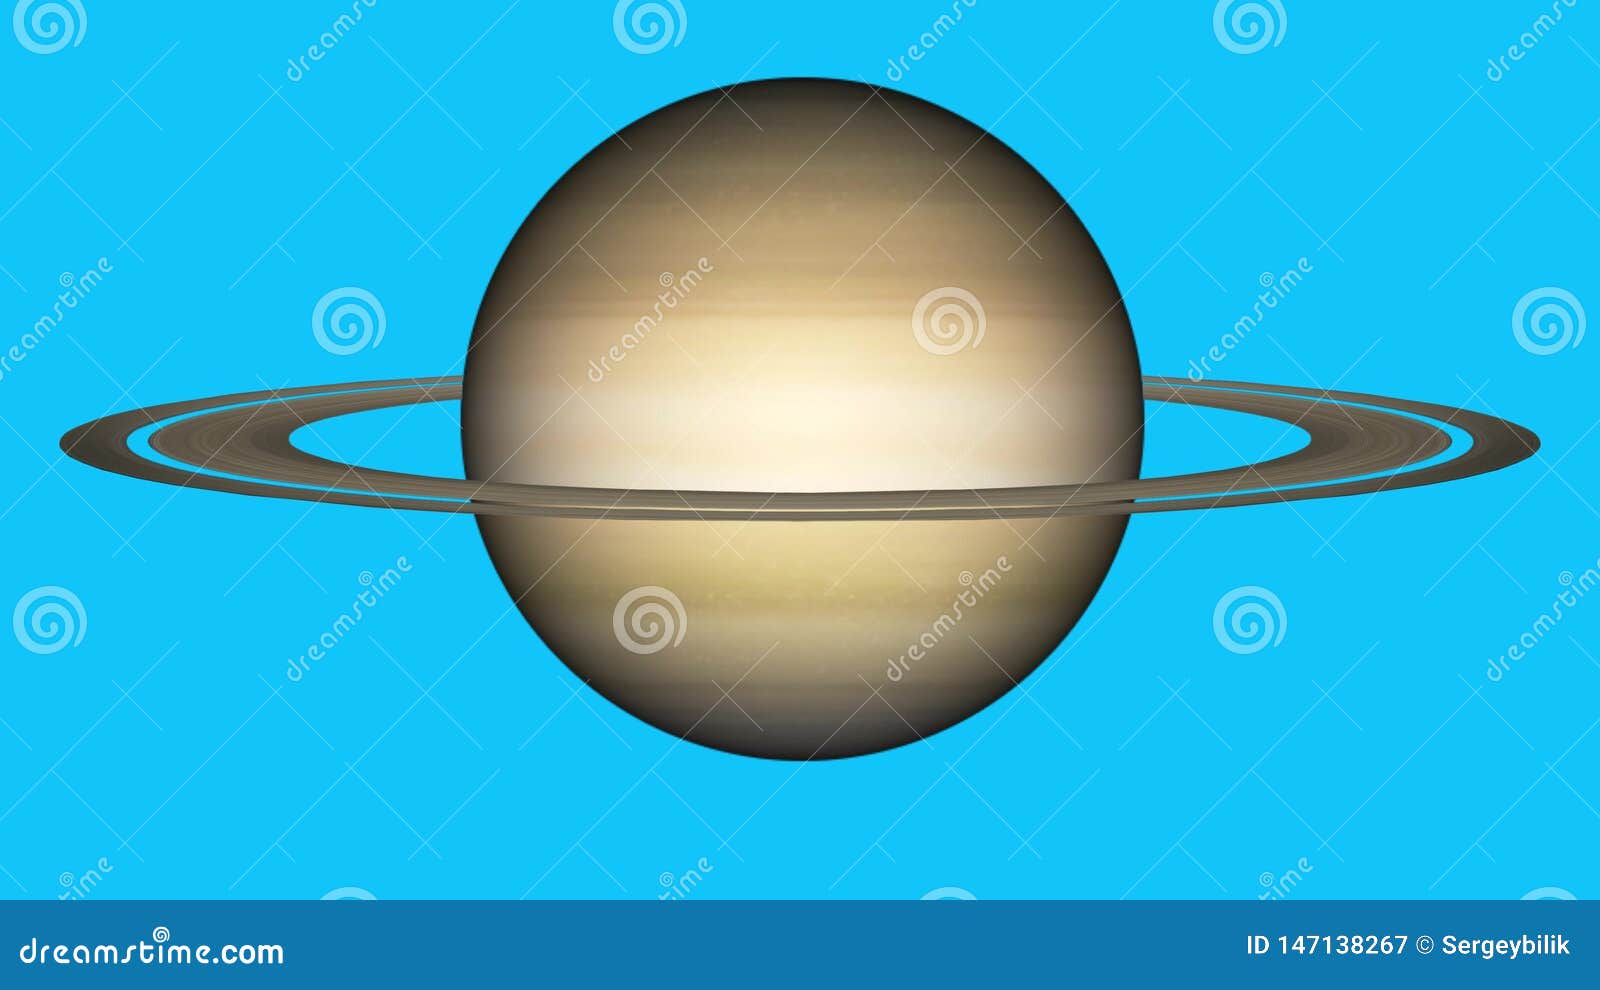 Hãy ngắm nhìn mô hình hành tinh Saturn tuyệt đẹp mô phỏng chính xác từ chiếc máy bay không gian Cassini của NASA. Các chi tiết trong mô hình này sẽ khiến bạn bị thu hút và tò mò để khám phá vũ trụ rộng lớn hơn nữa.